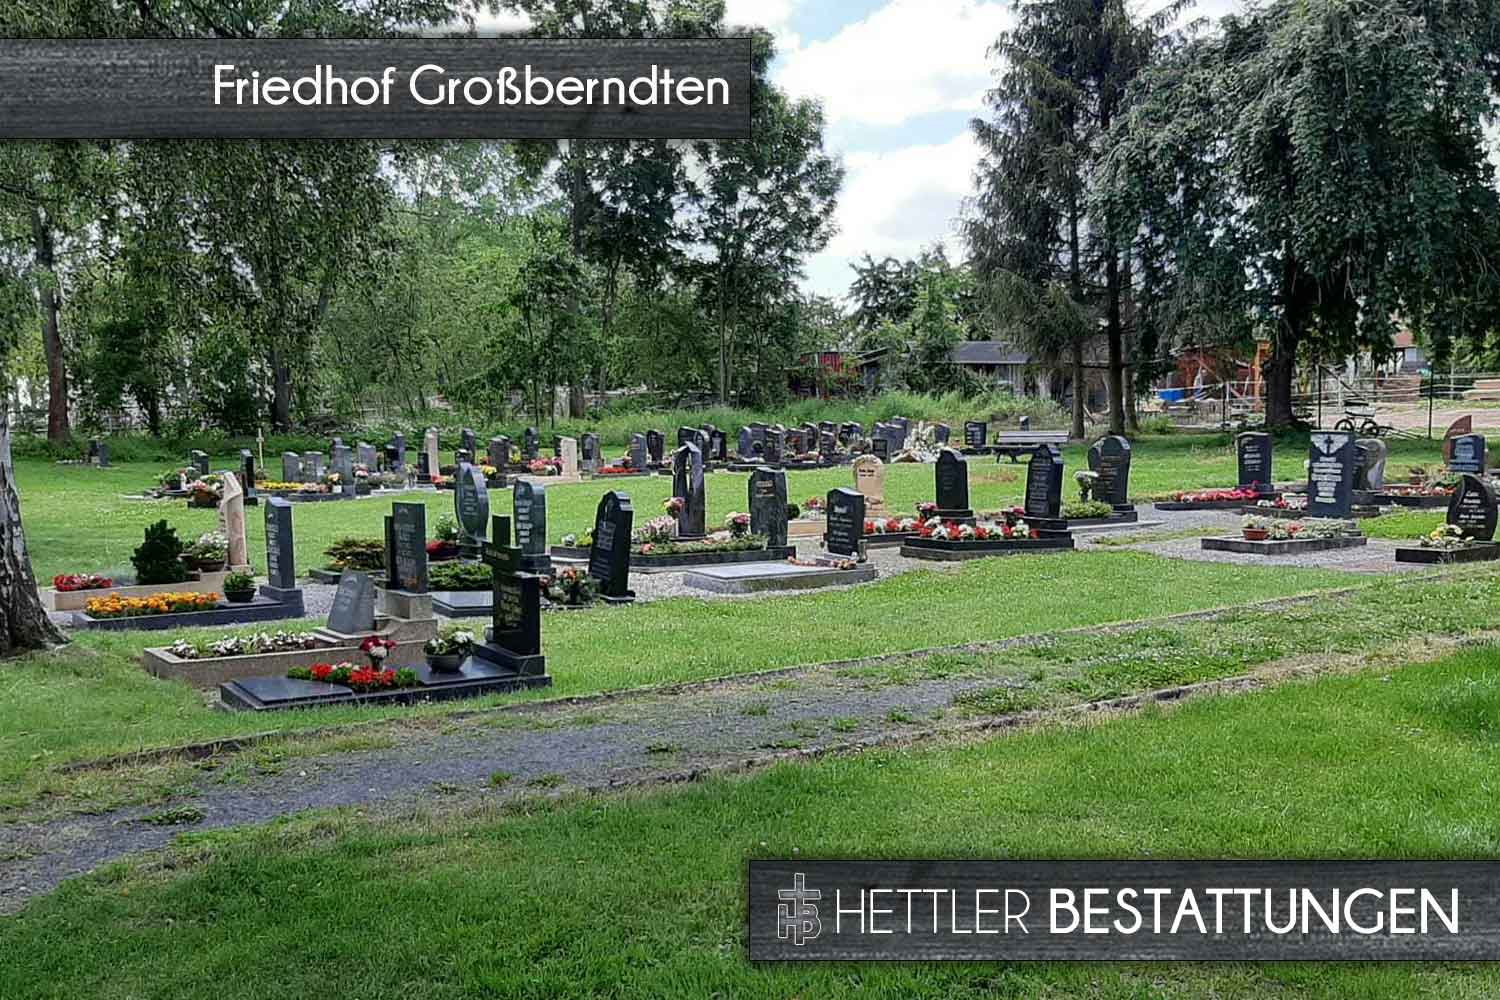 Friedhof in Großberndten. Ihr Ort des Abschieds mit Hettler Bestattungen.